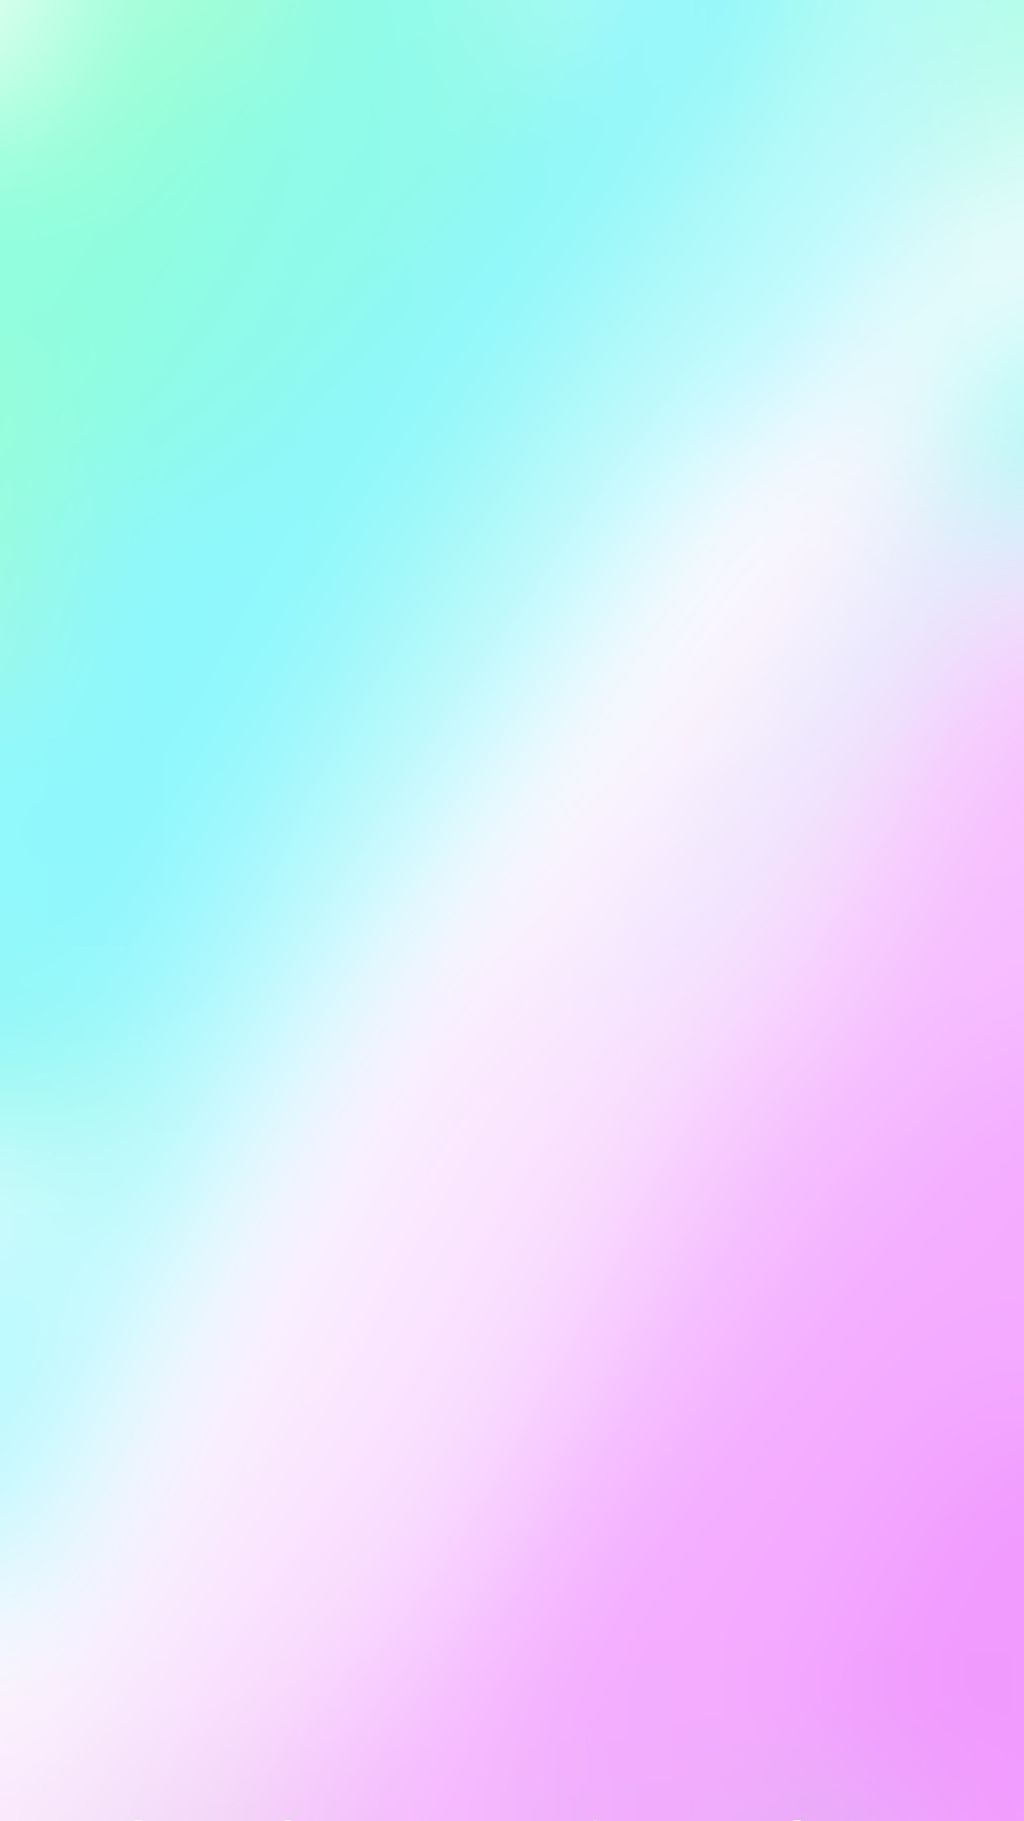 Yooiiiiii - Teal Green And Pink Background - 1024x1821 Wallpaper 